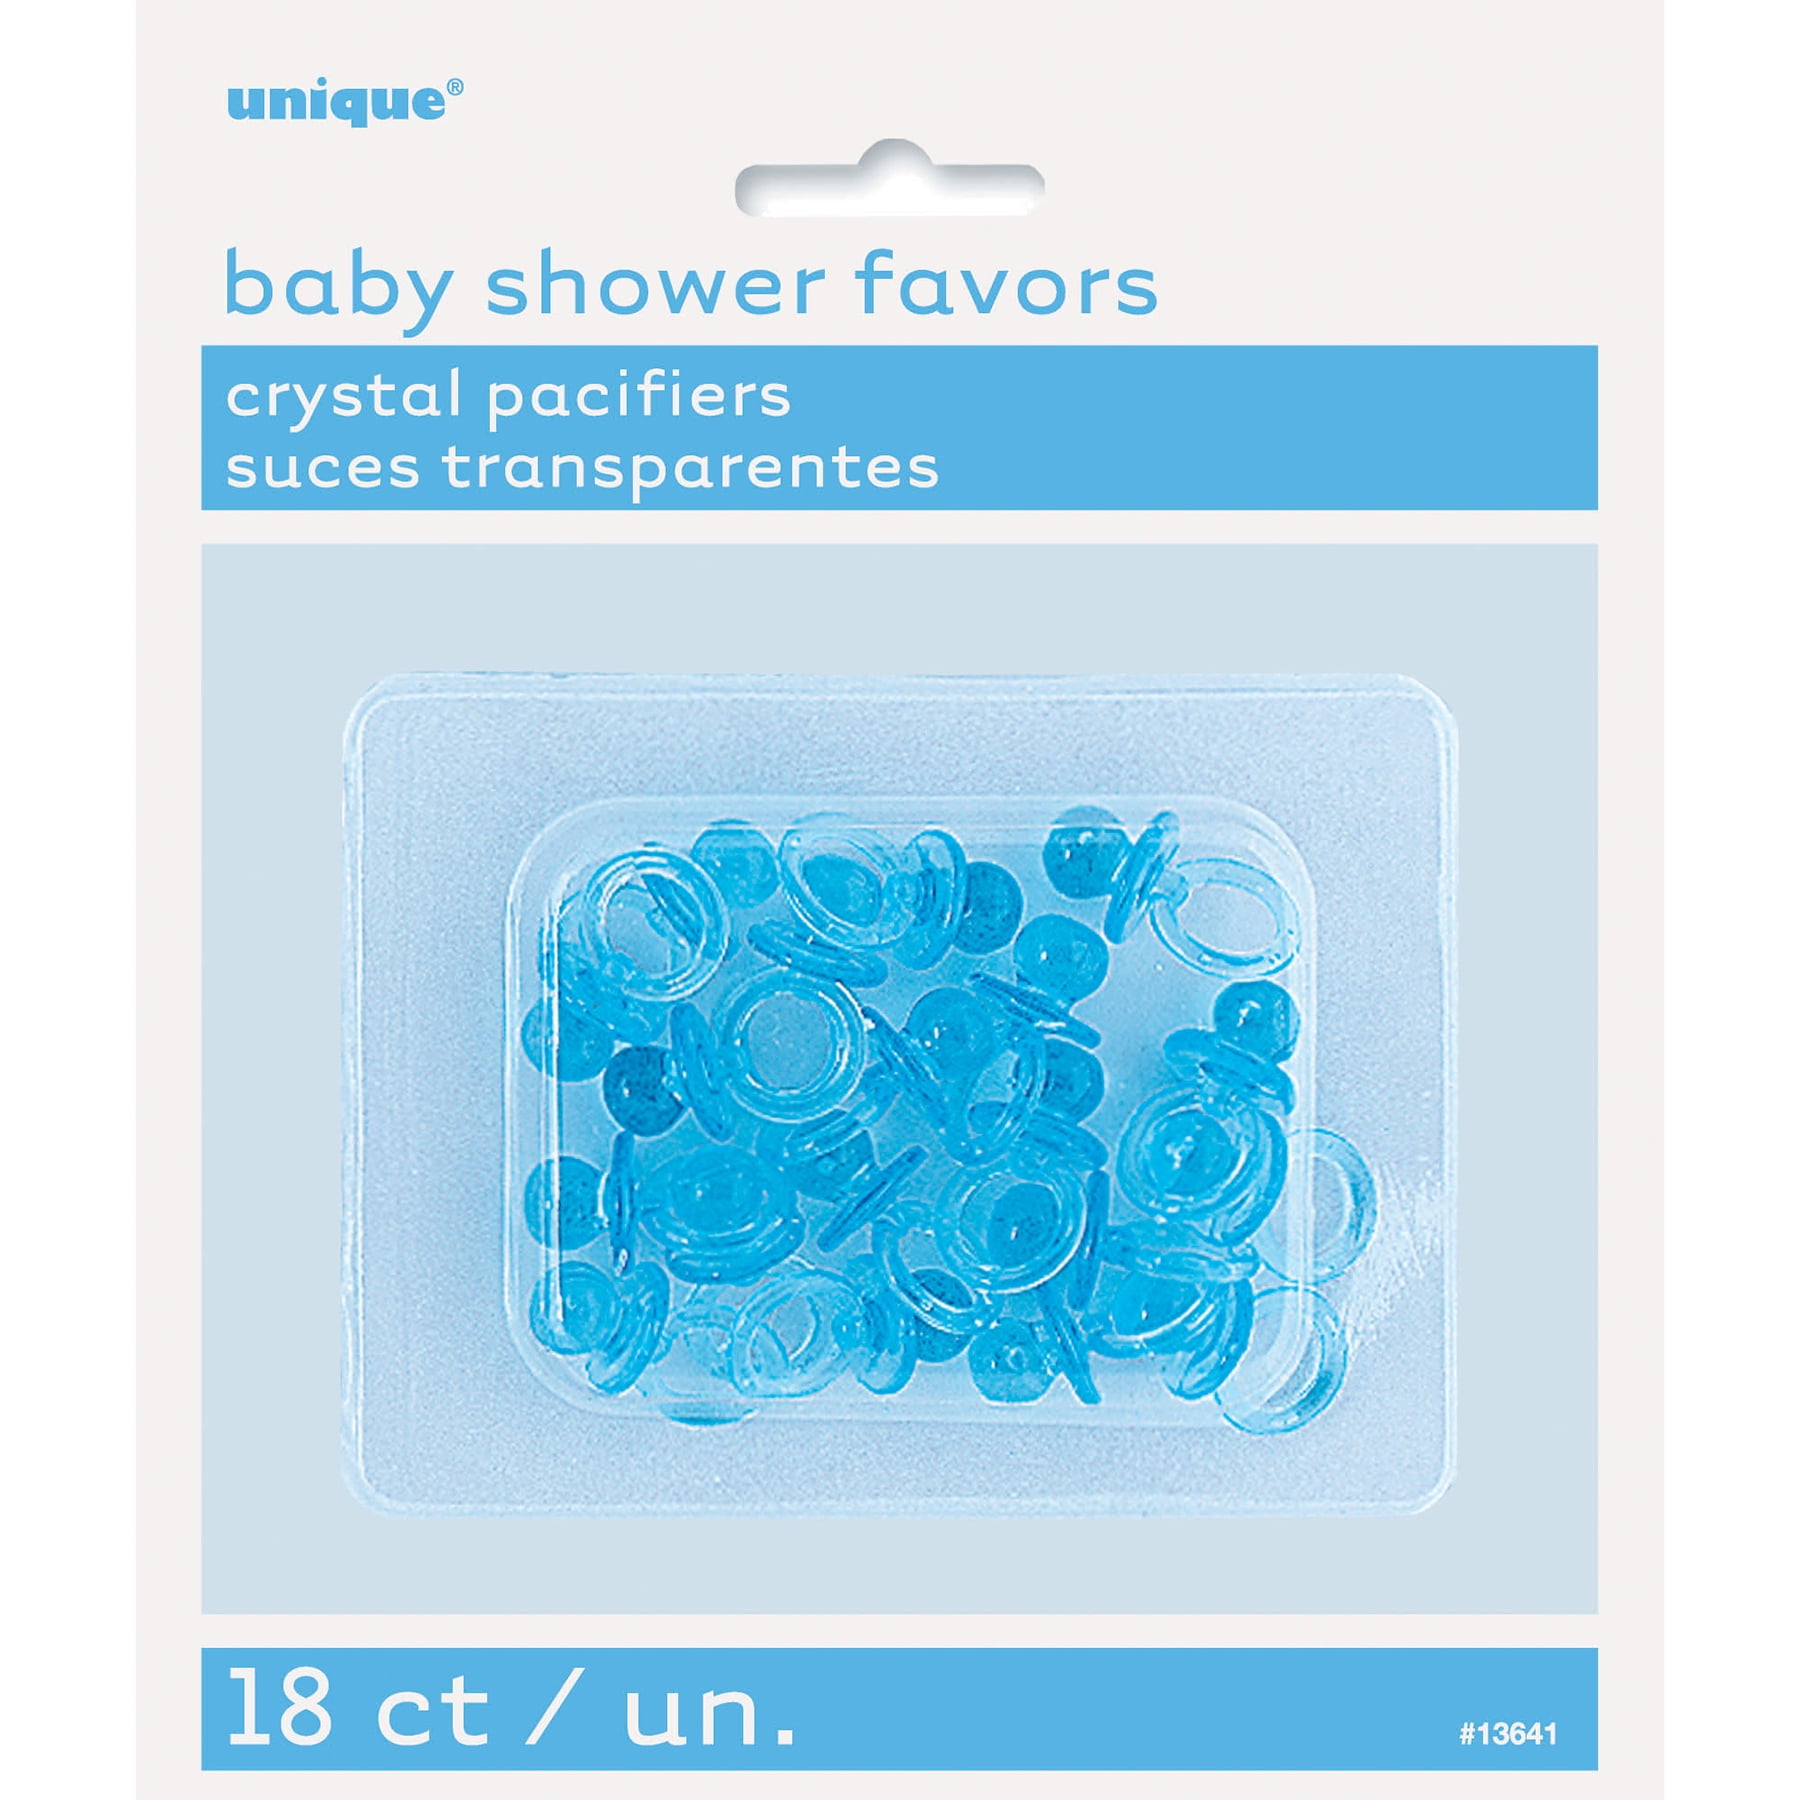 48 pcs Mini RATTLES Baby SHOWER Favor Light BLUE Boy Decor PARTY Decorations USA